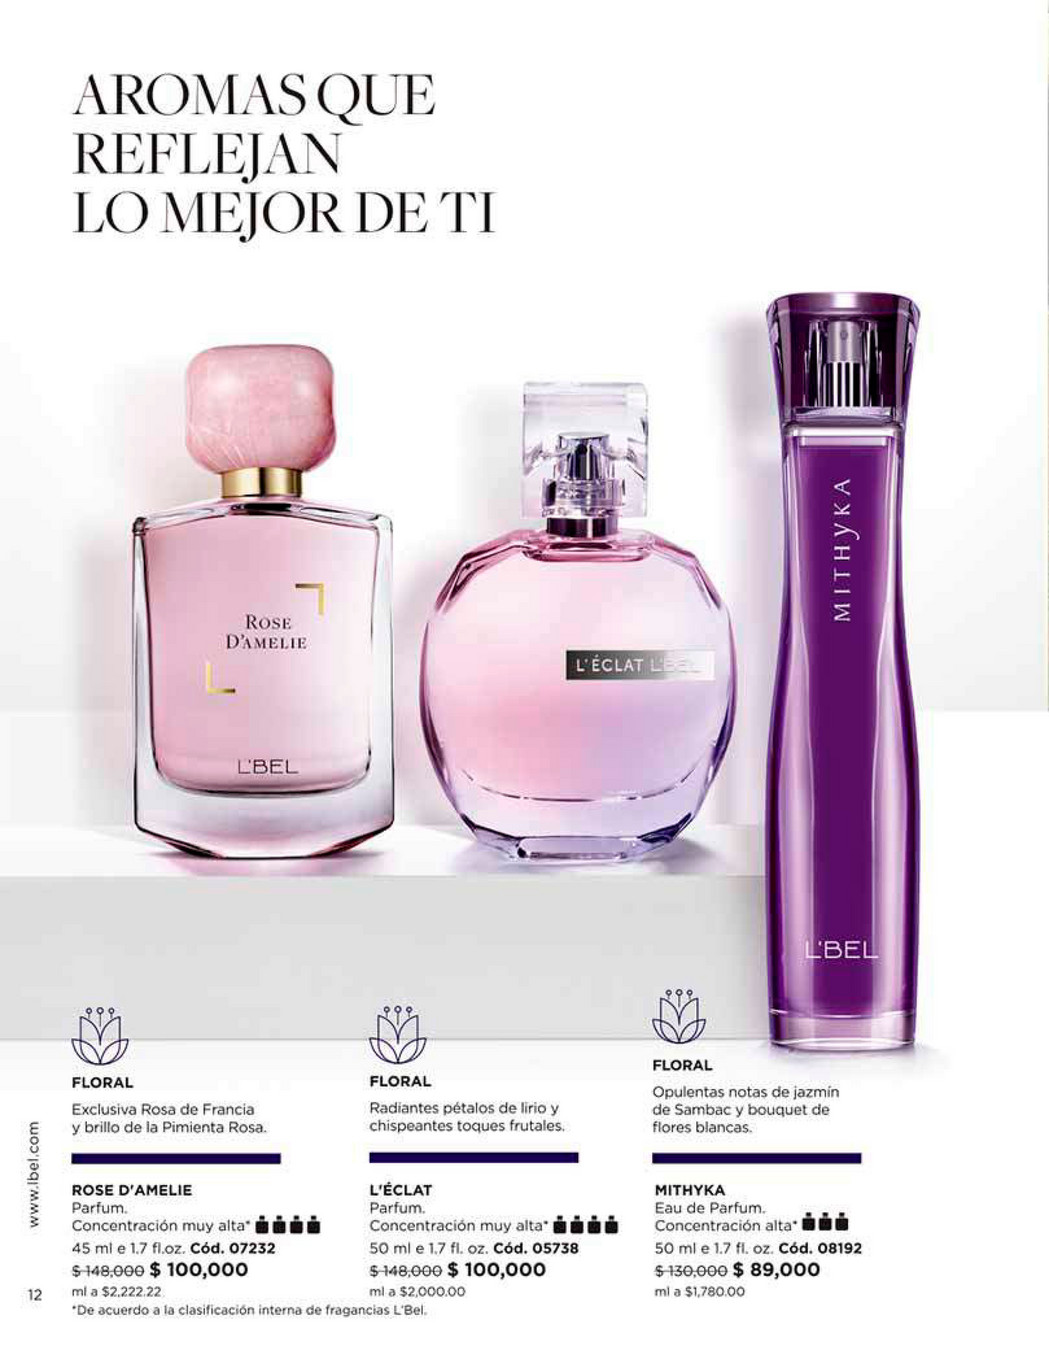 L'bel Mithyka Eau de Parfum for Women 1.7 fl.oz.